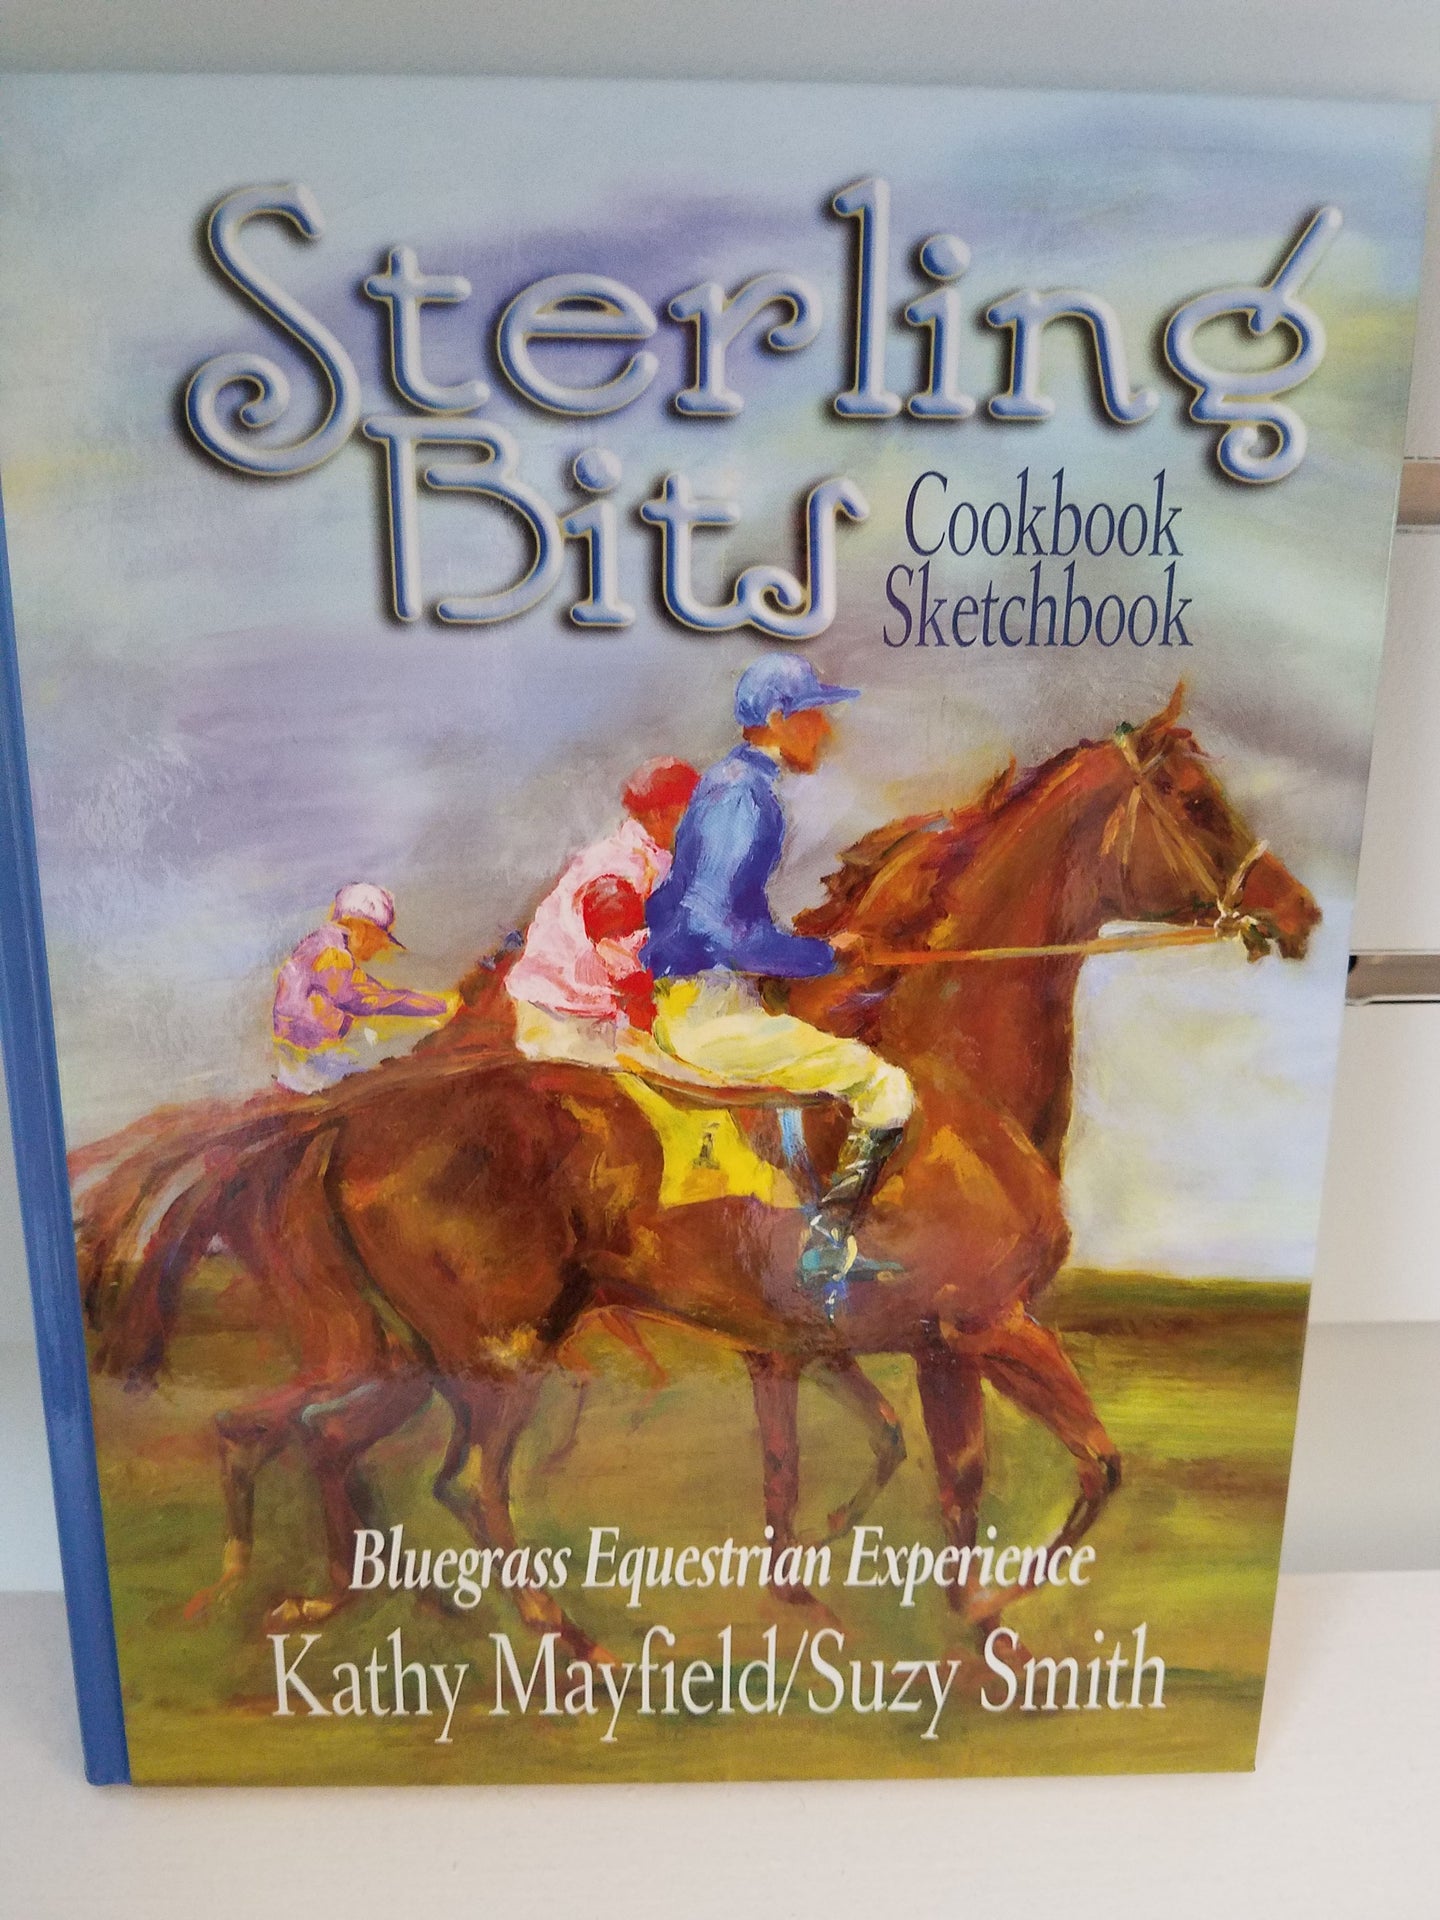 Sterling Bits Cookbook Sketchbook